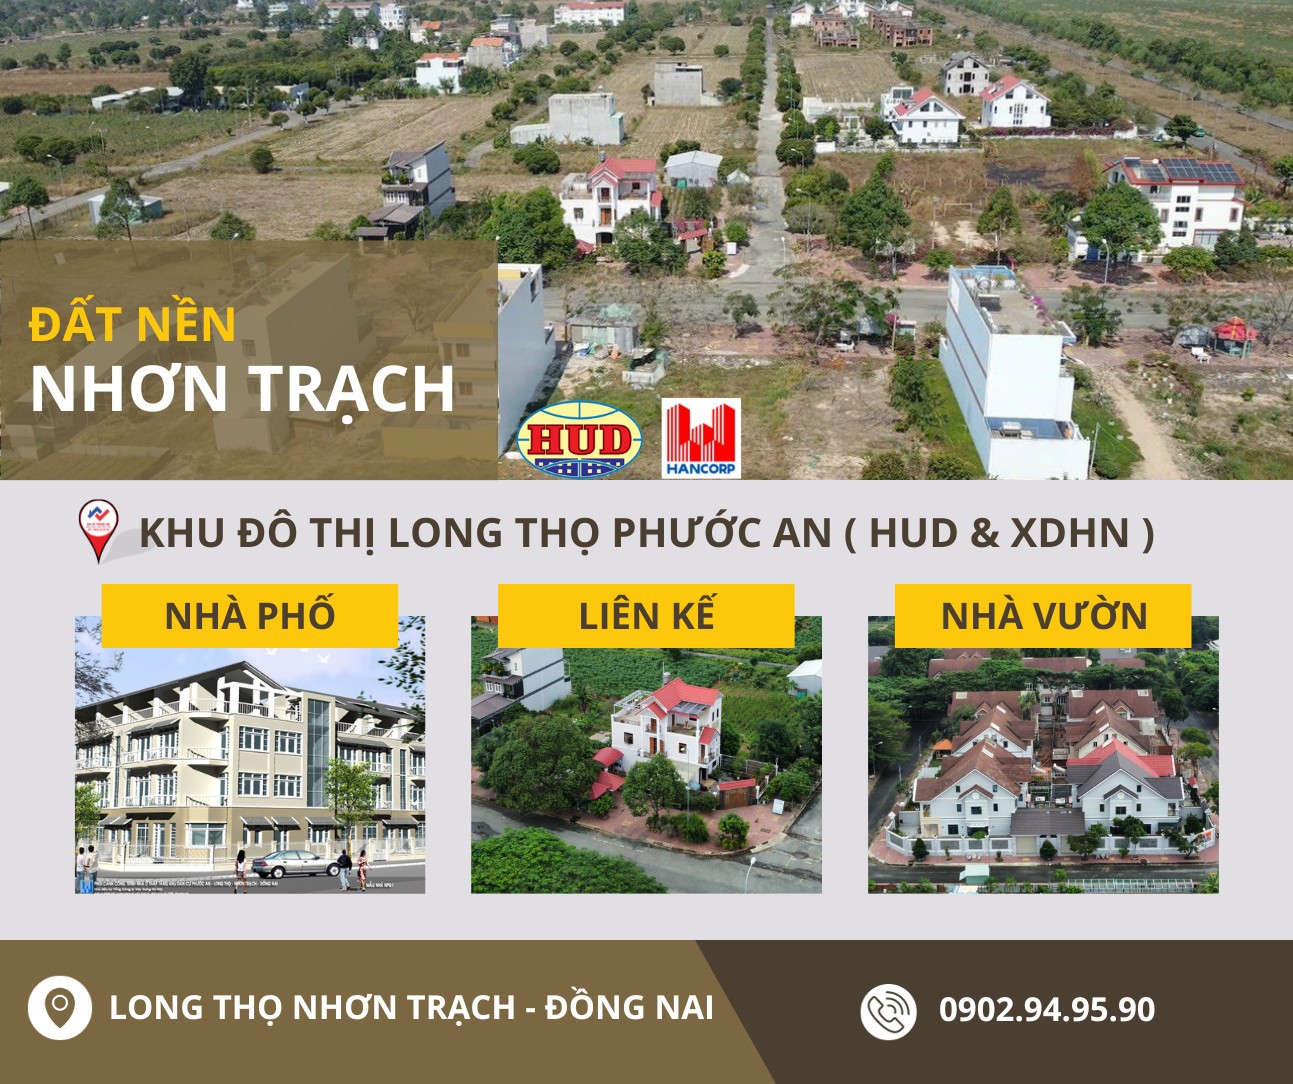 Đầu tư đất nền tiềm năng tại Nhơn Trạch cửa ngõ sân bay Long Thành 2